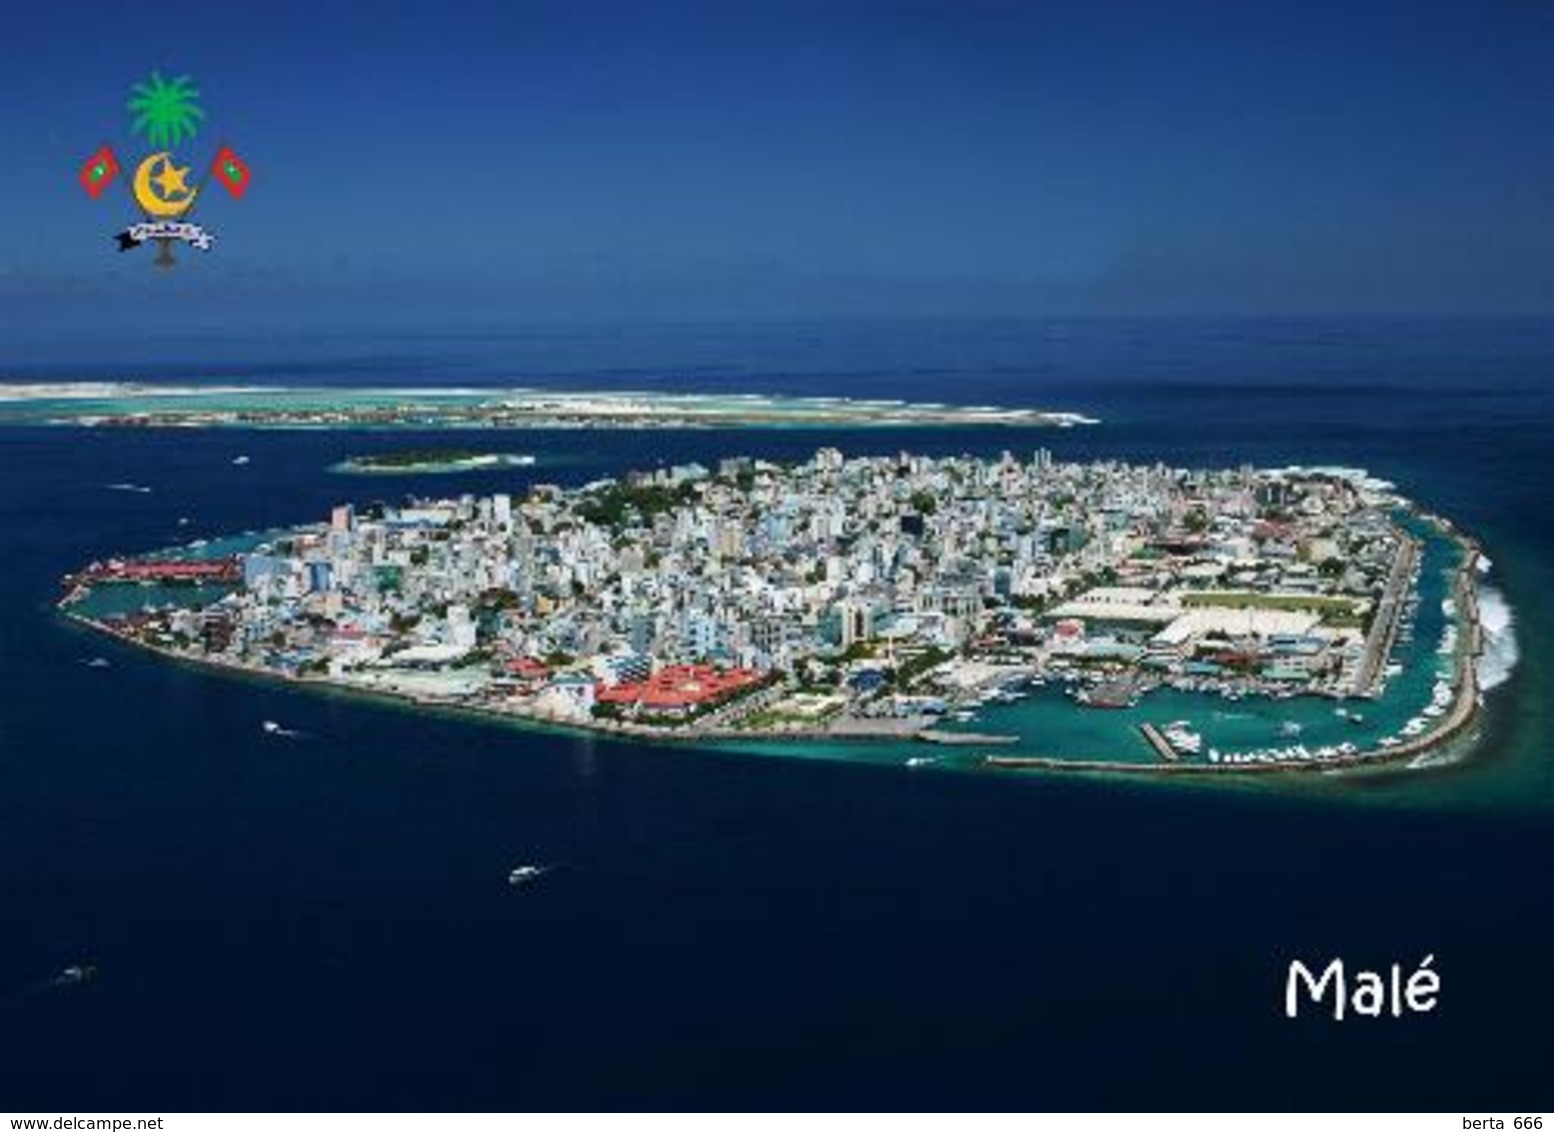 Maldives Malé Island Aerial View New Postcard Malediven AK - Maldiven